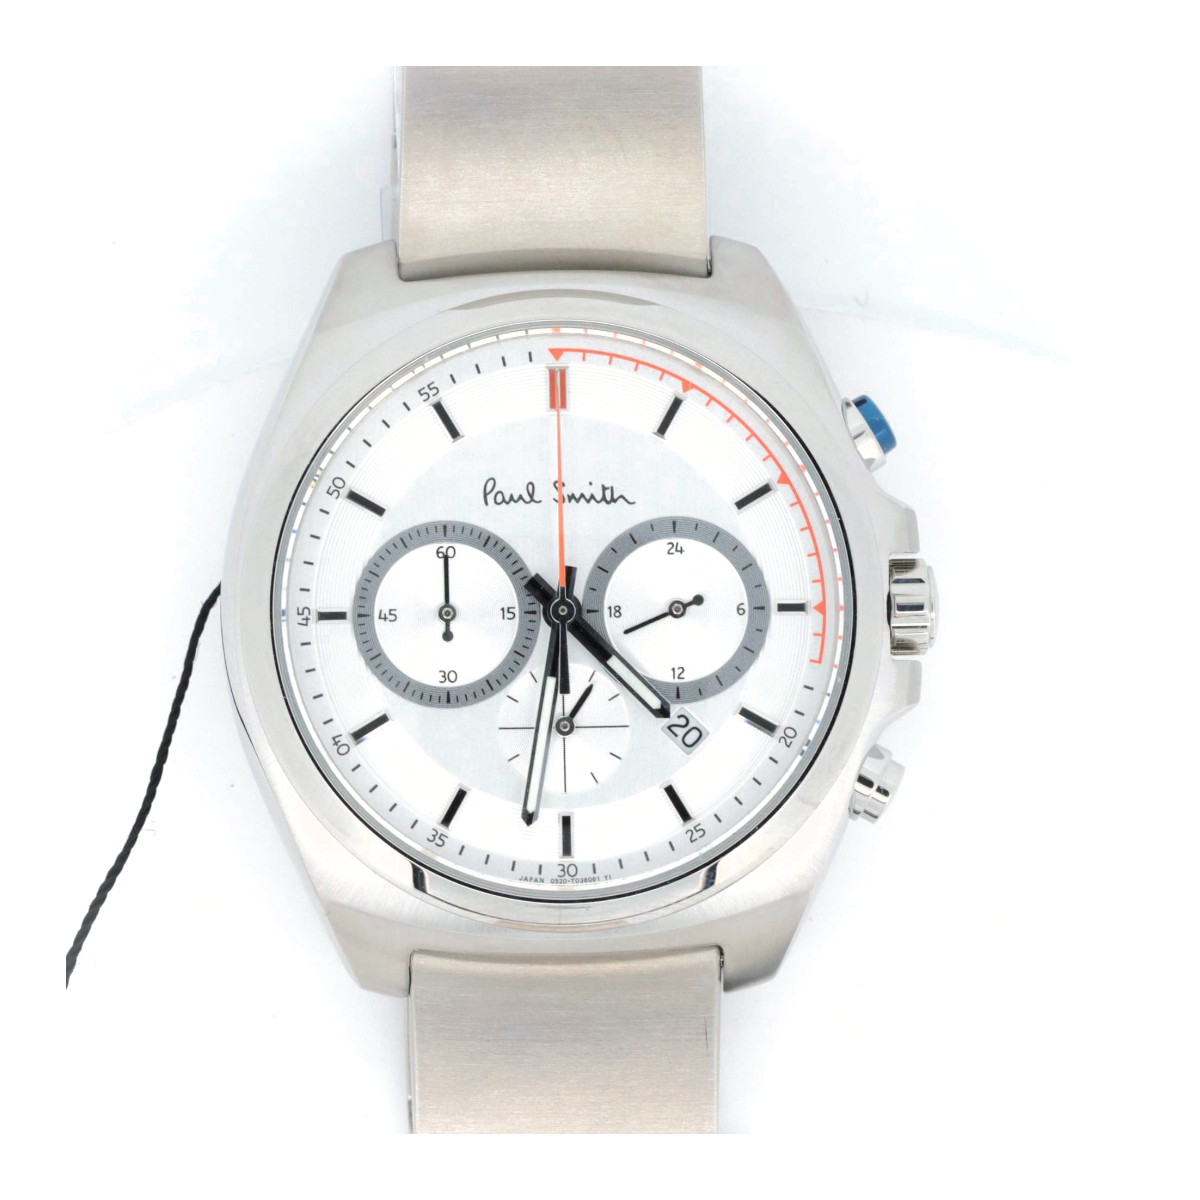 ポールスミス ファイナルアイズ クロノグラフ BA4-612-11 メンズ腕時計 クォーツ ホワイト 質屋出品